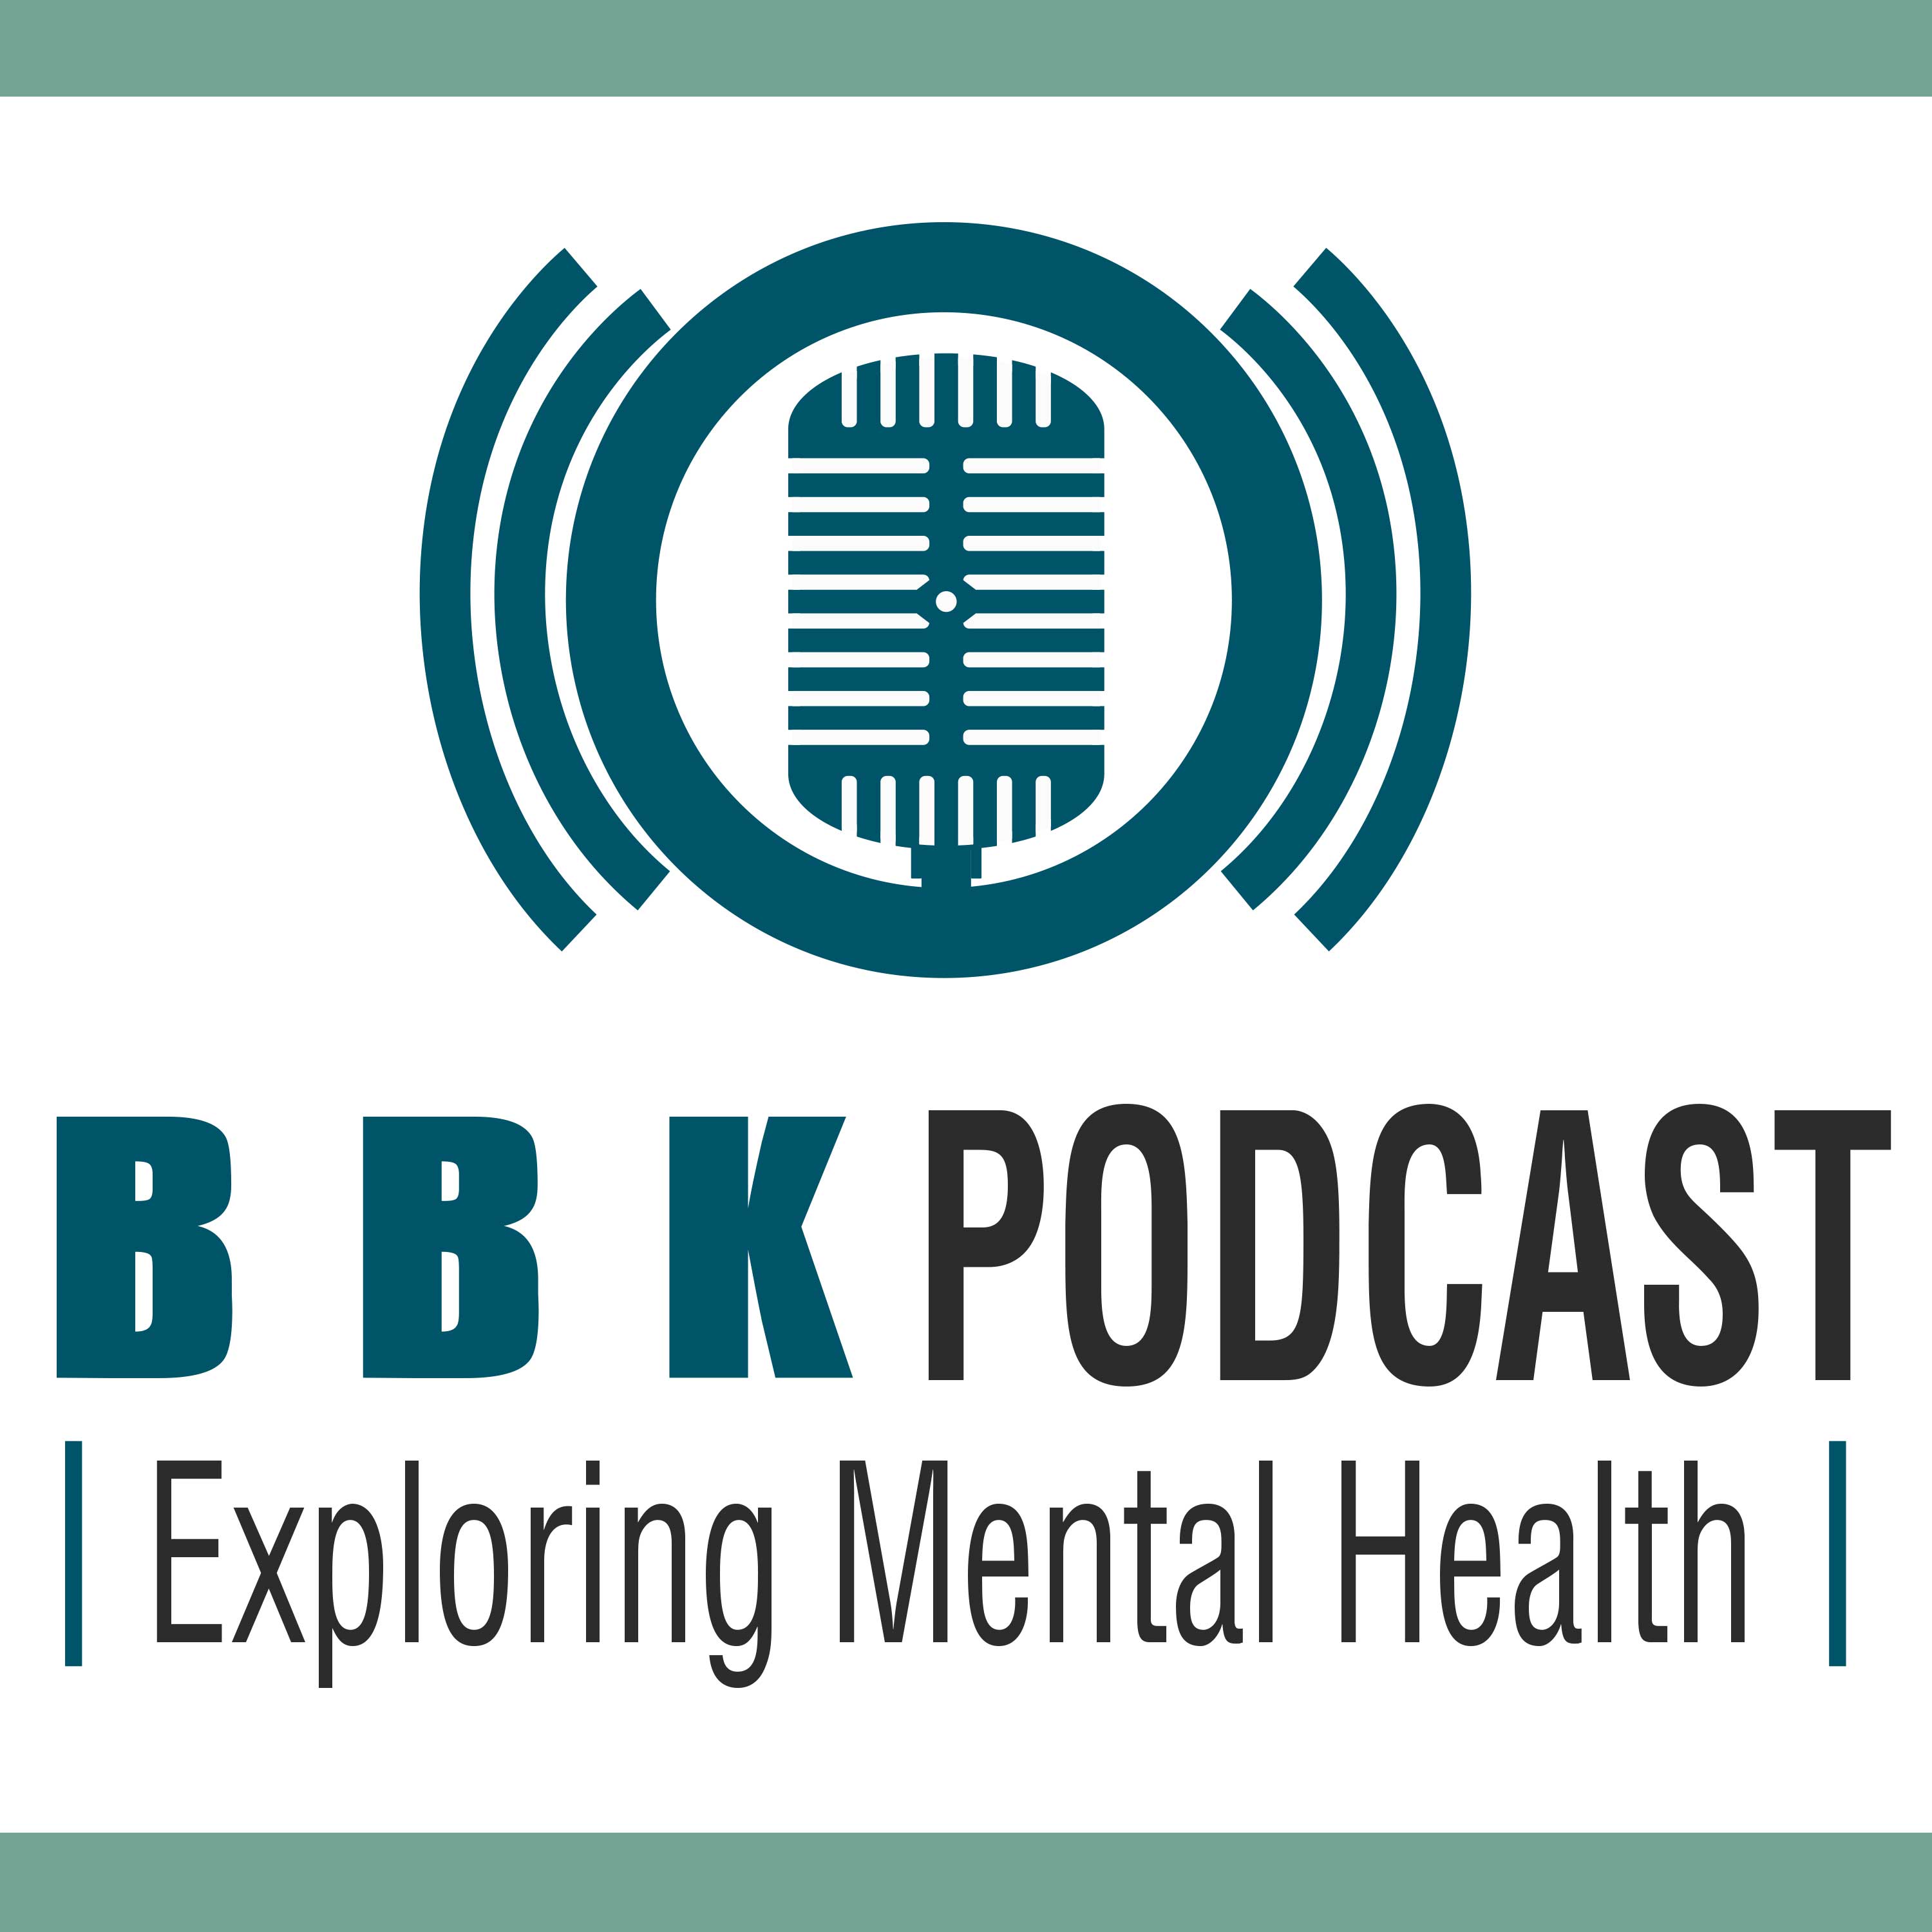 BBK Podcast